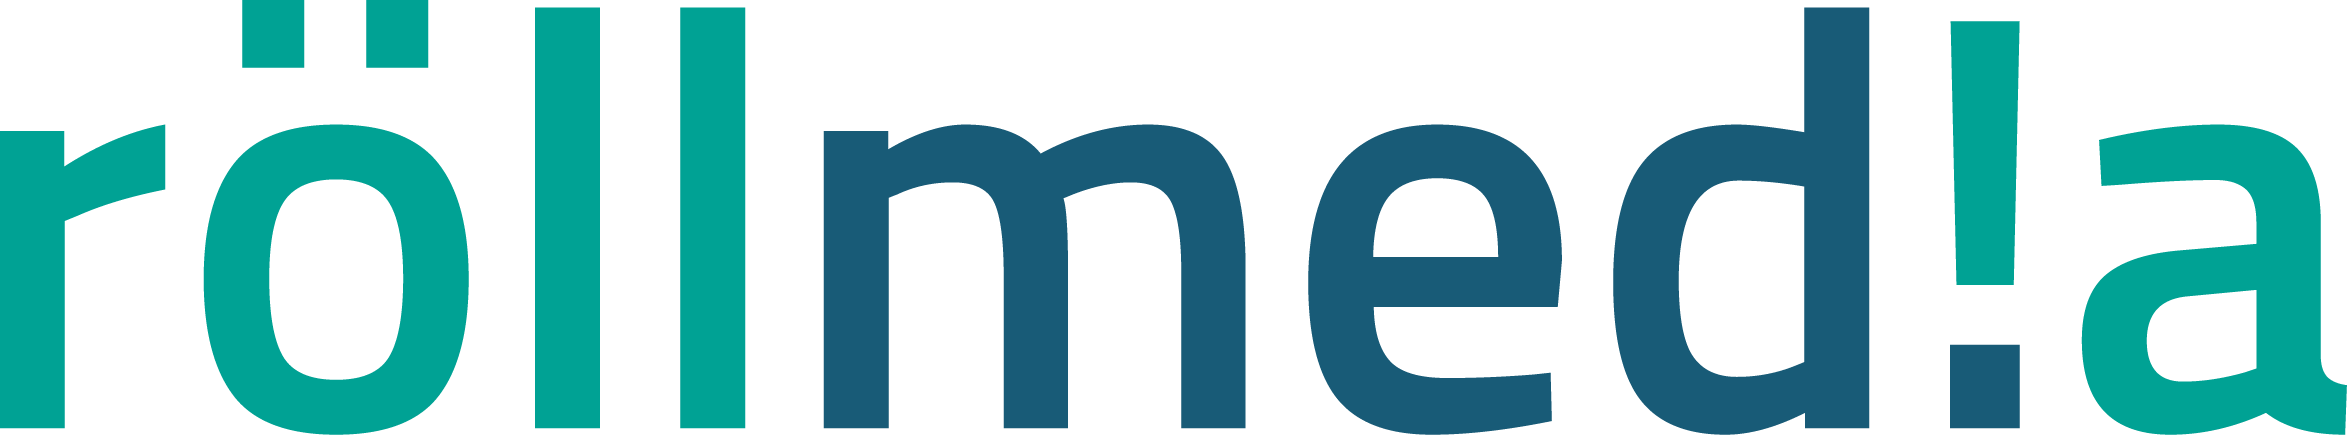 roell media logo